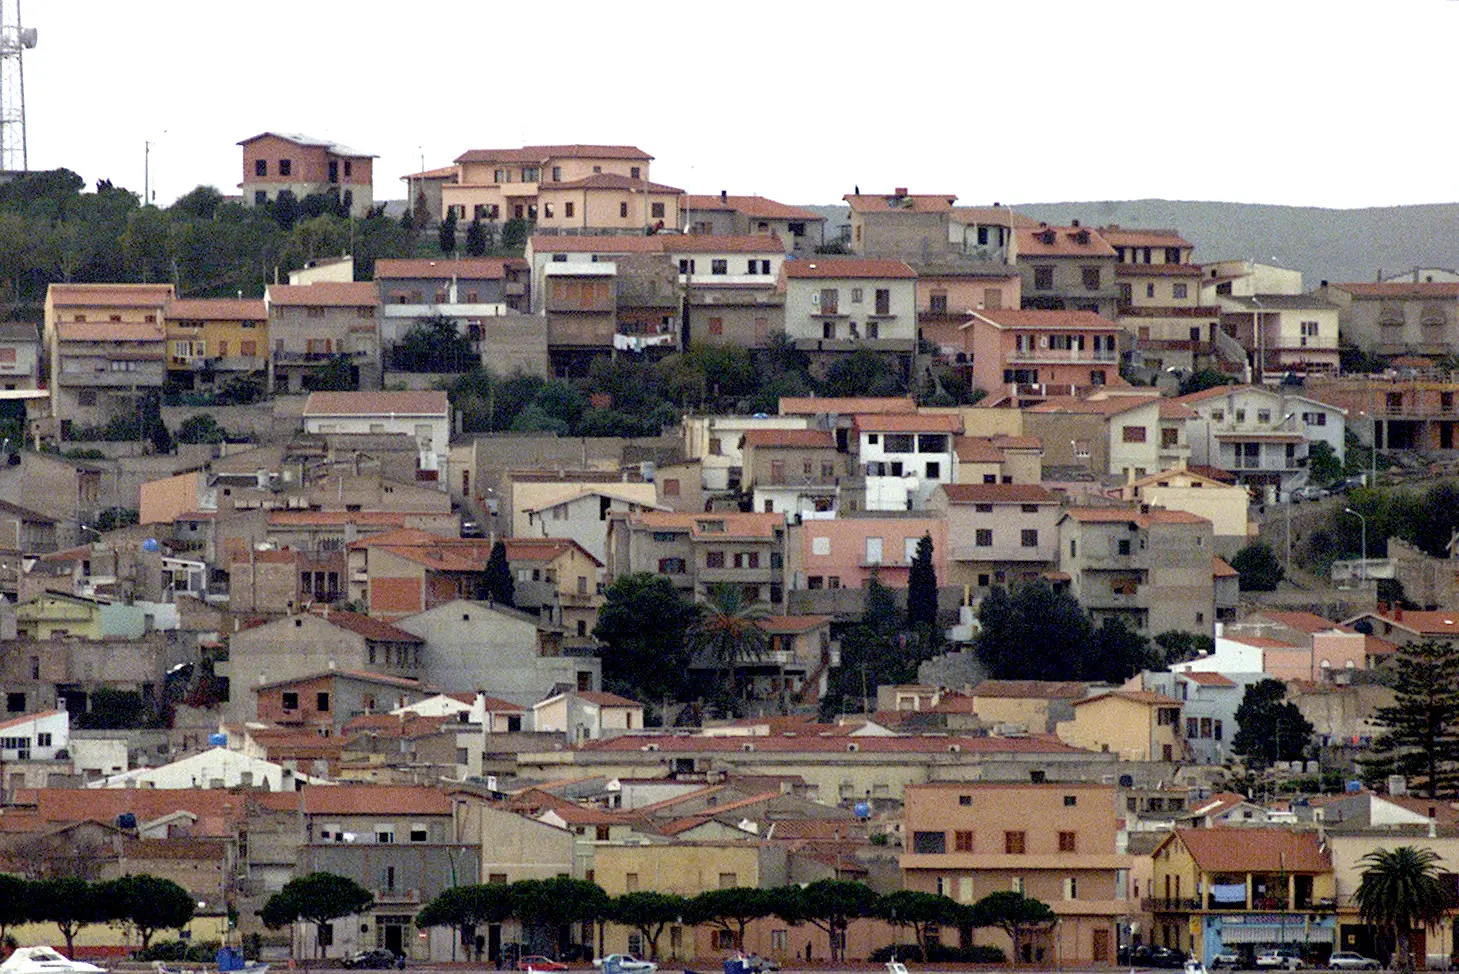 La panoramica di un borgo della Sardegna (L'Unione Sarda)